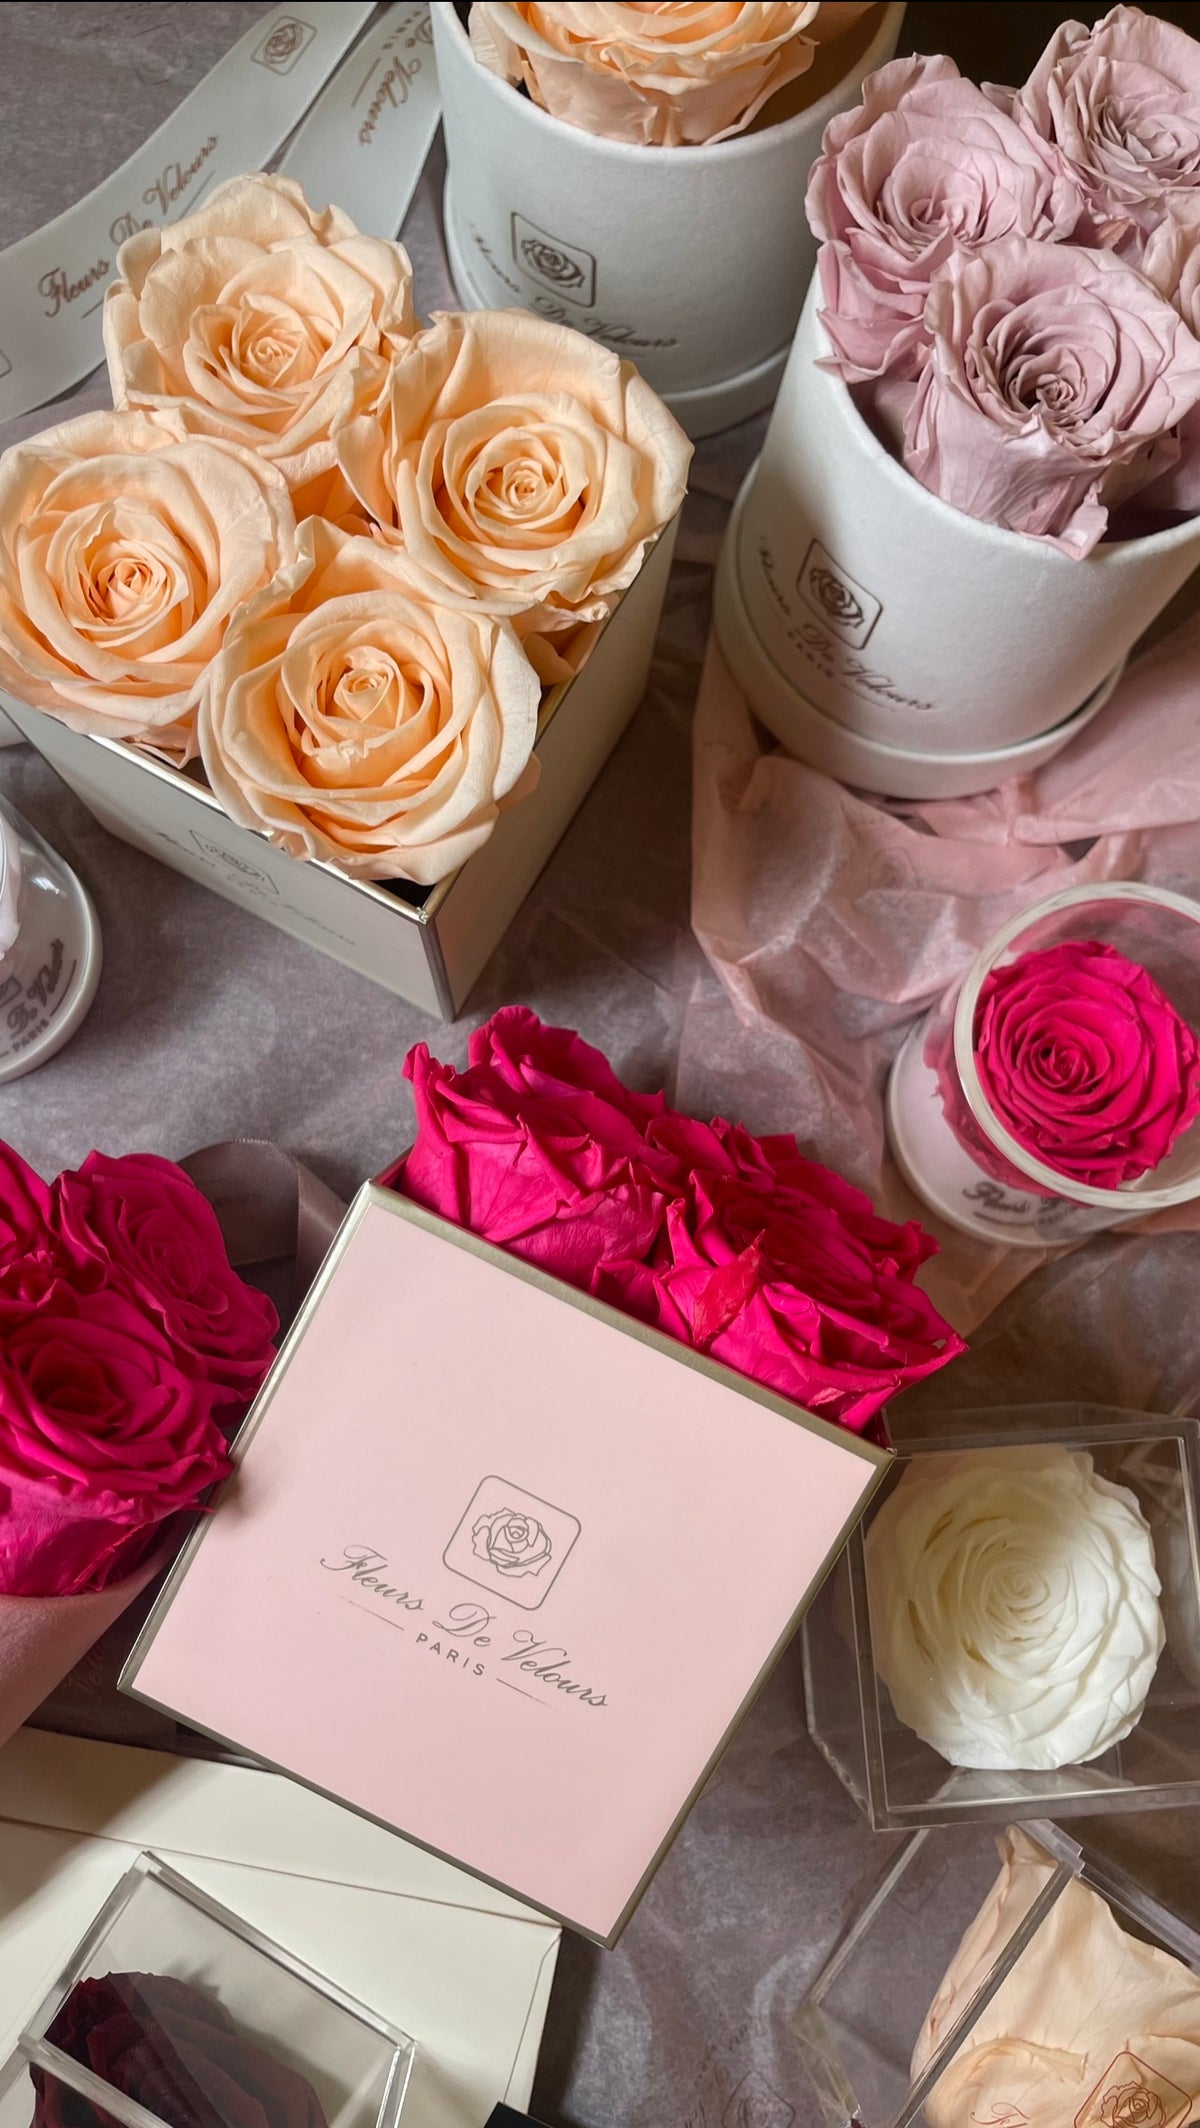 Fleurs De Velours - Elegant Pieces Pink